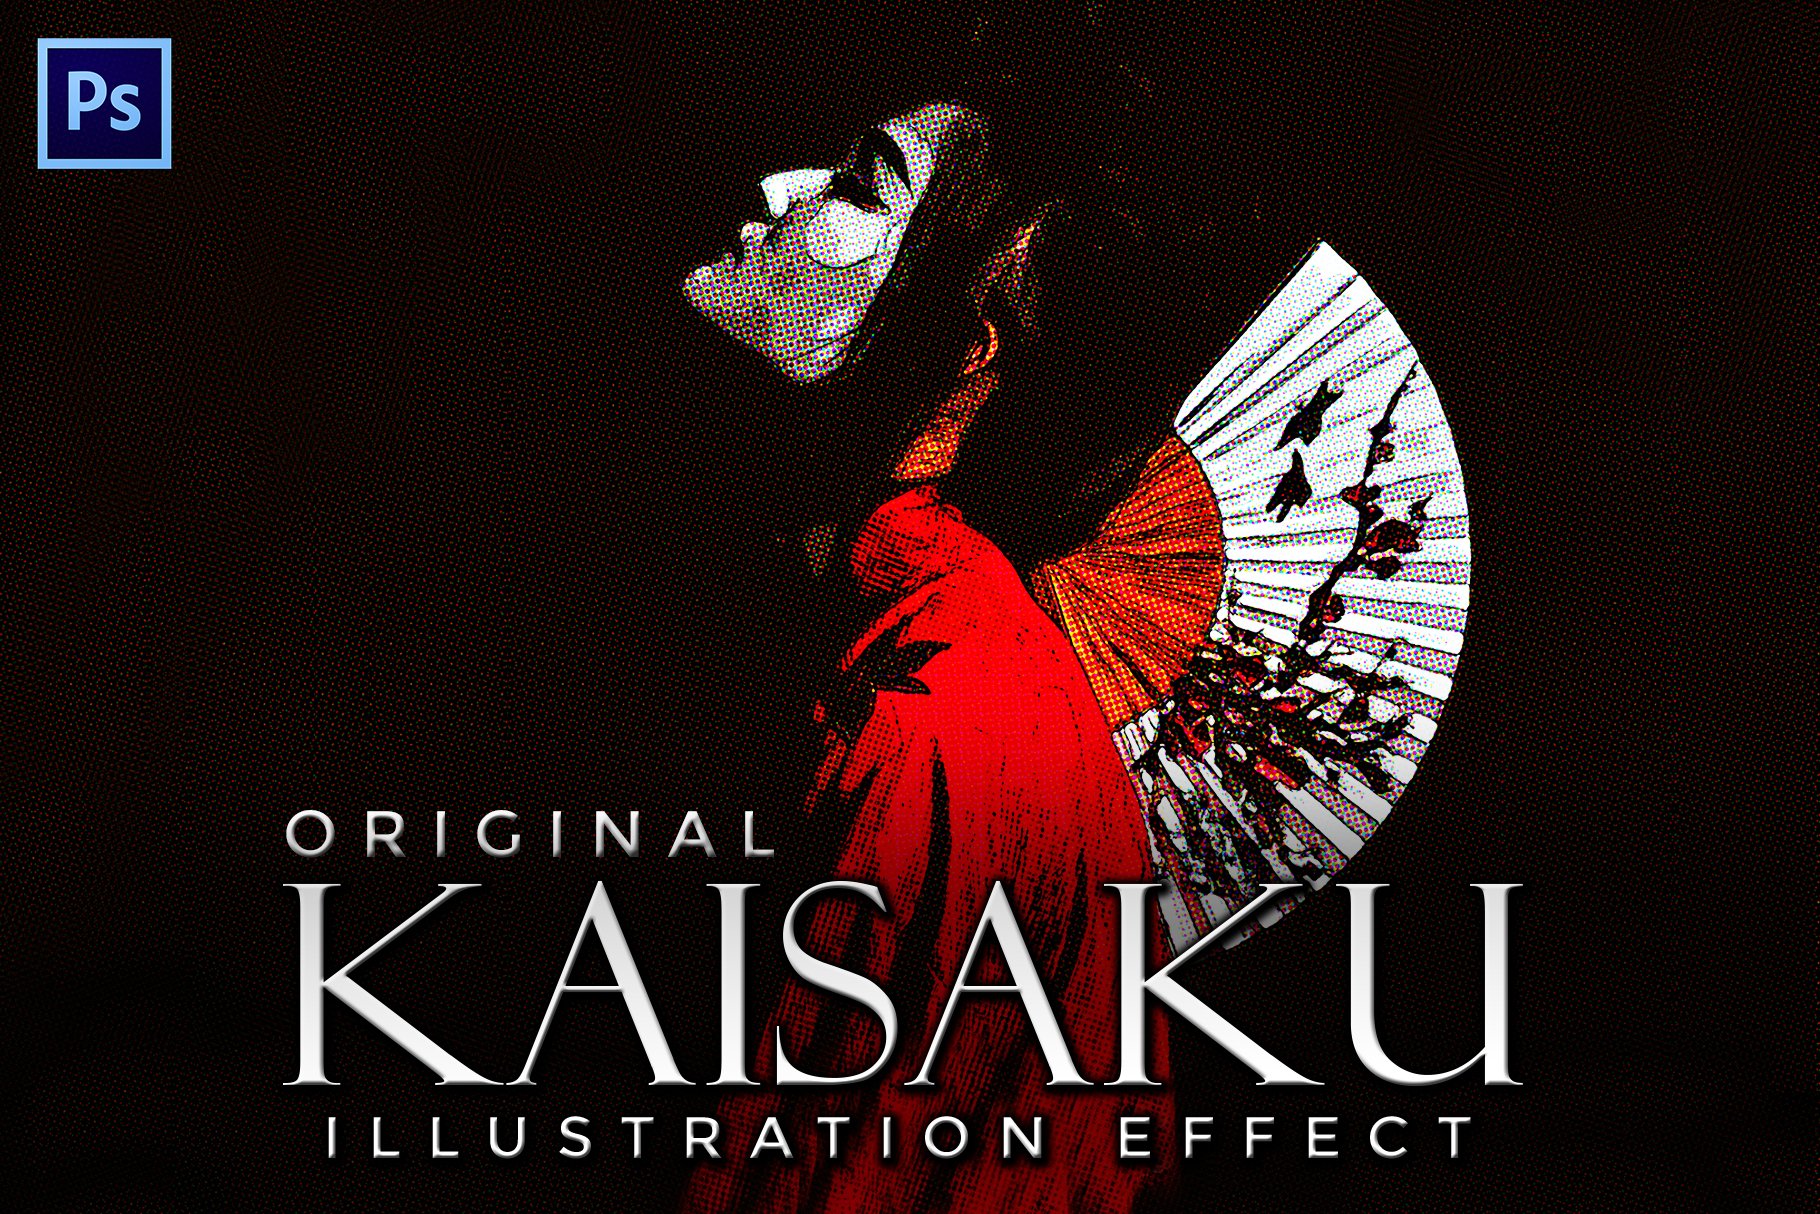 Kaisaku Halftone Illustration Effectcover image.